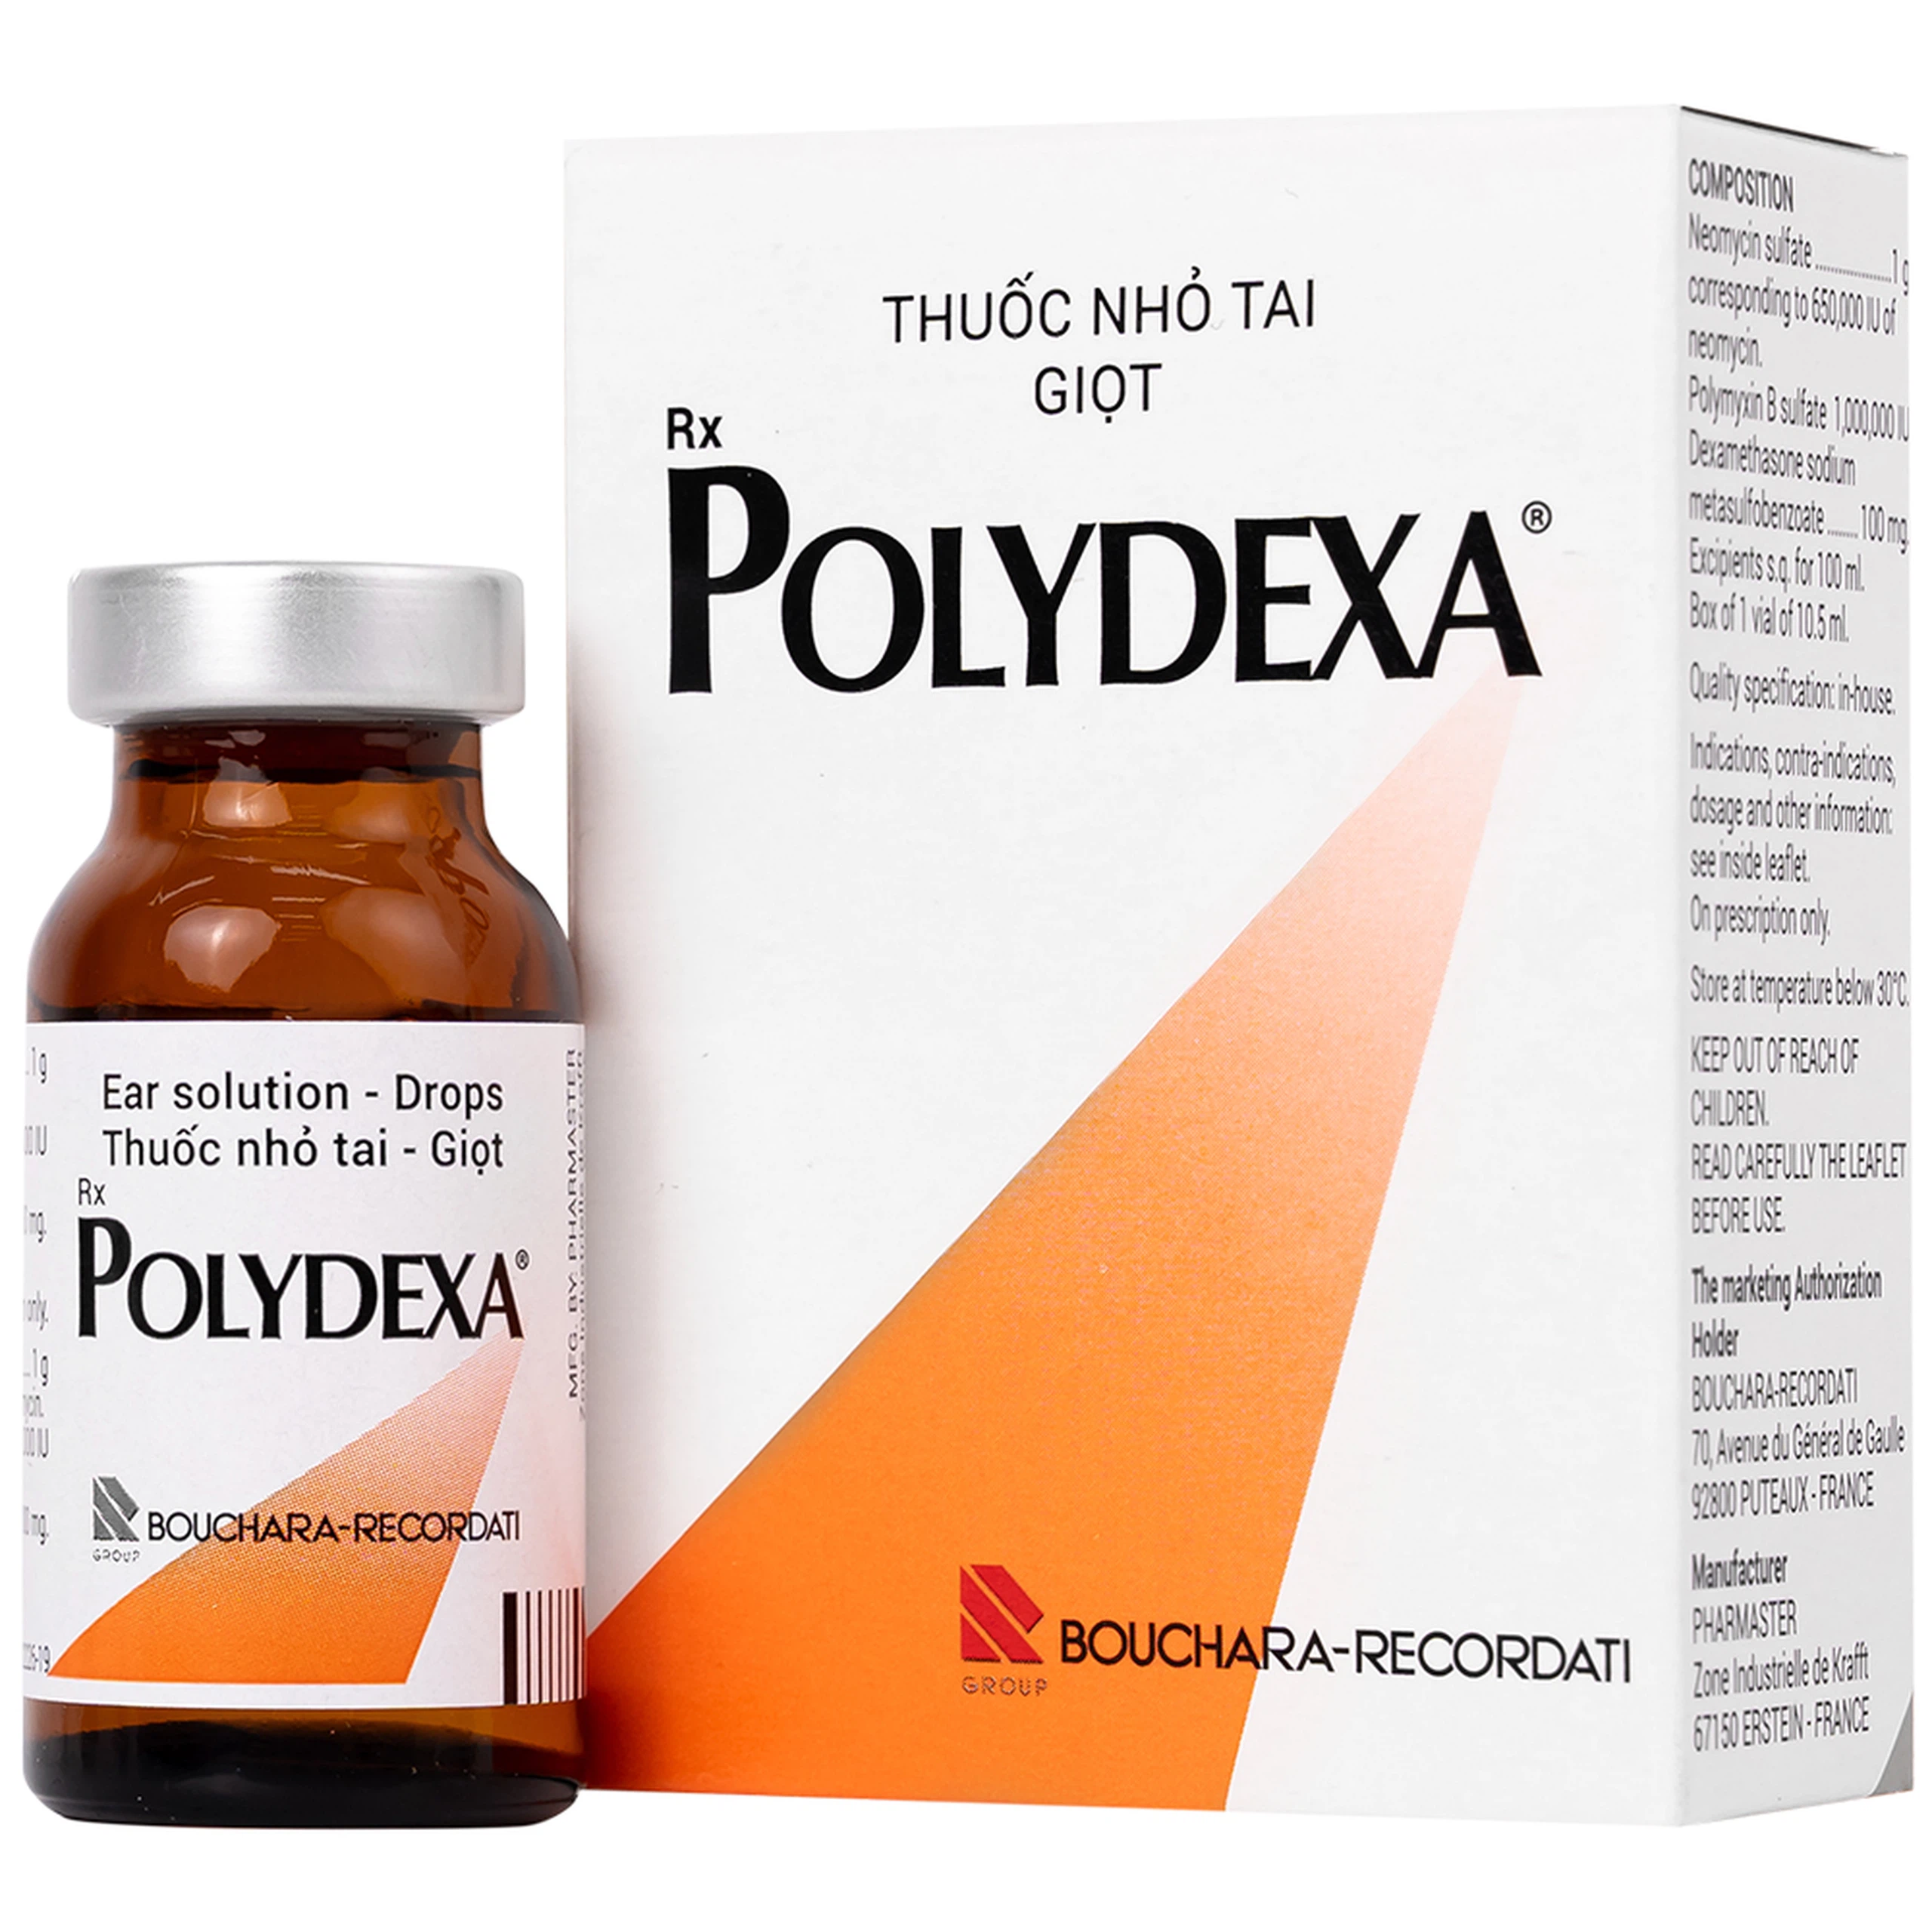 Thuốc Polydexa Bouchara điều trị viêm tai ngoài (10.5ml)